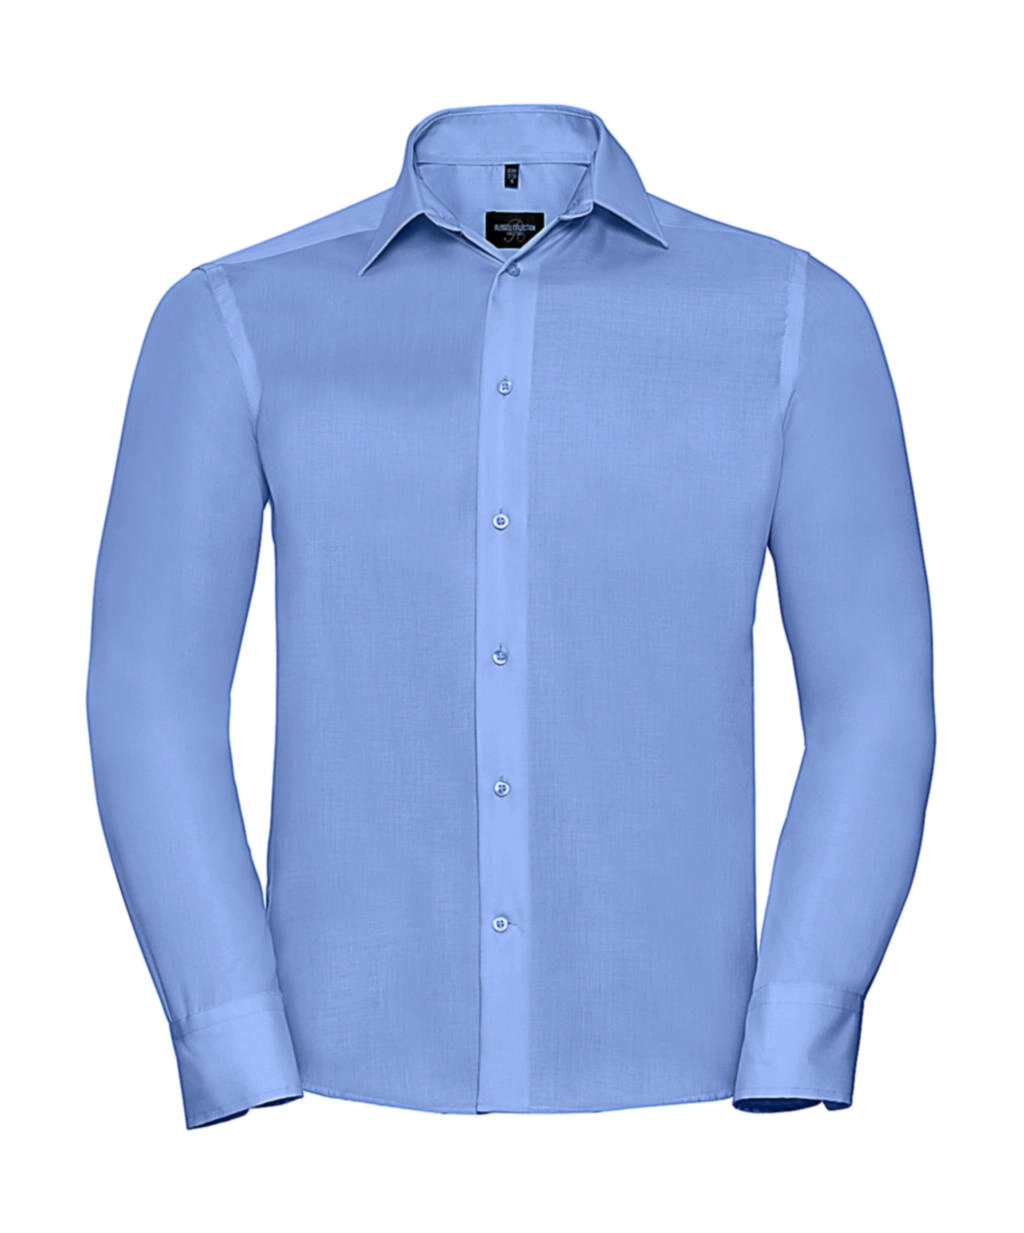 Tailored Ultimate Non-iron Shirt LS zum Besticken und Bedrucken in der Farbe Bright Sky mit Ihren Logo, Schriftzug oder Motiv.